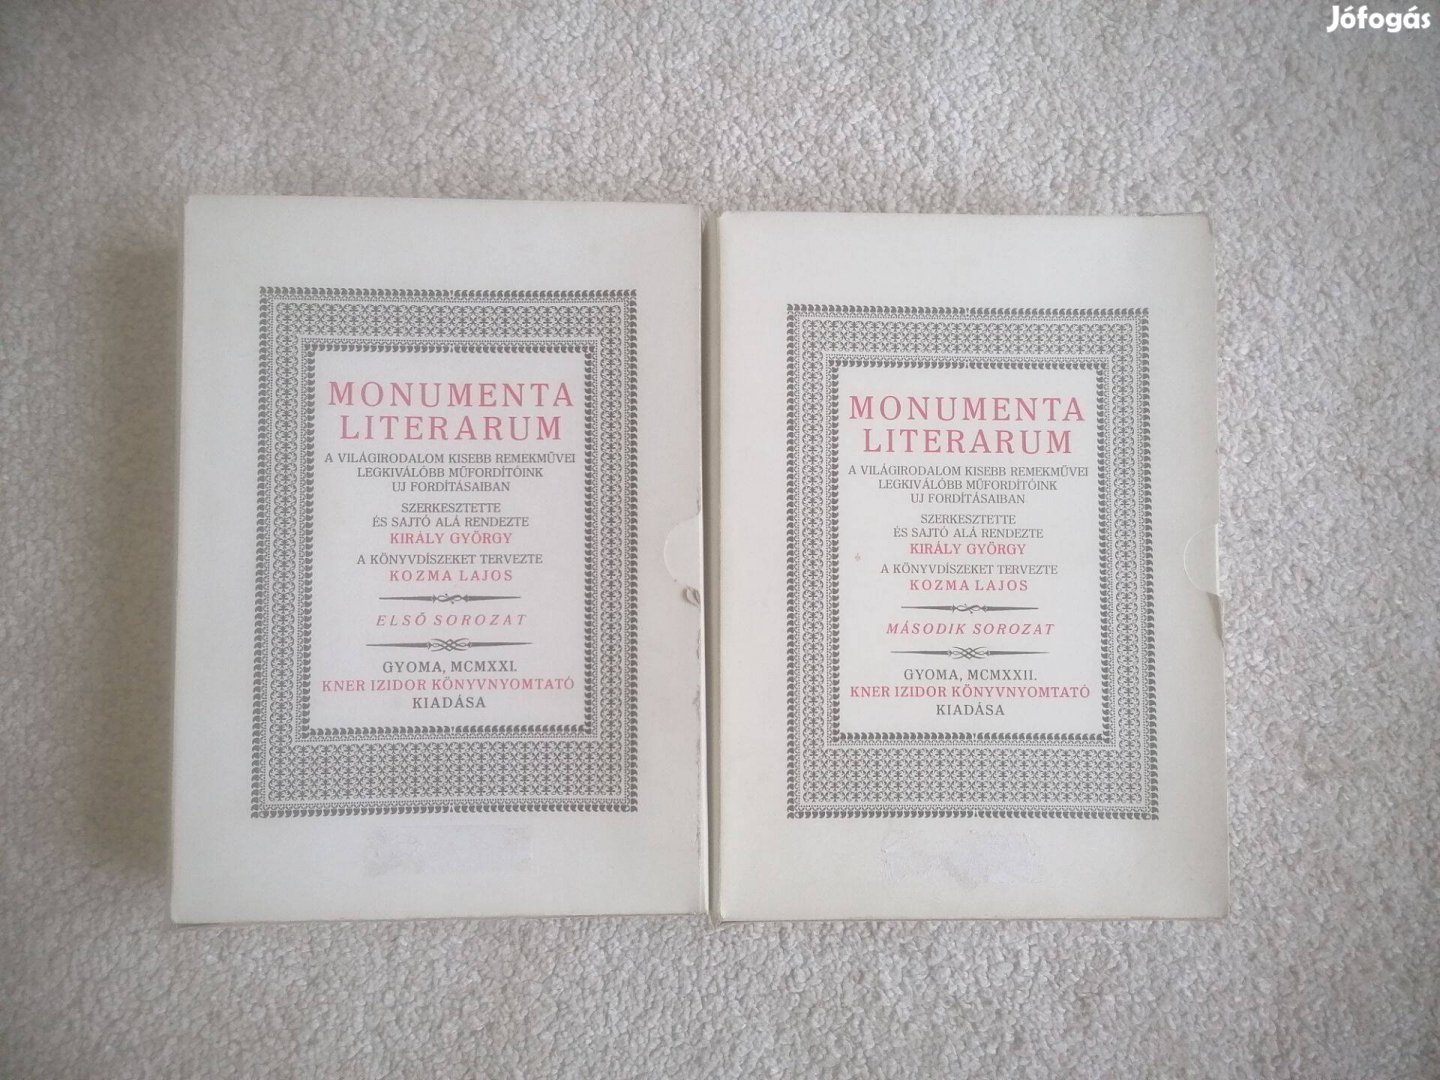 Király György (szerk.): Monumenta literarum I-II